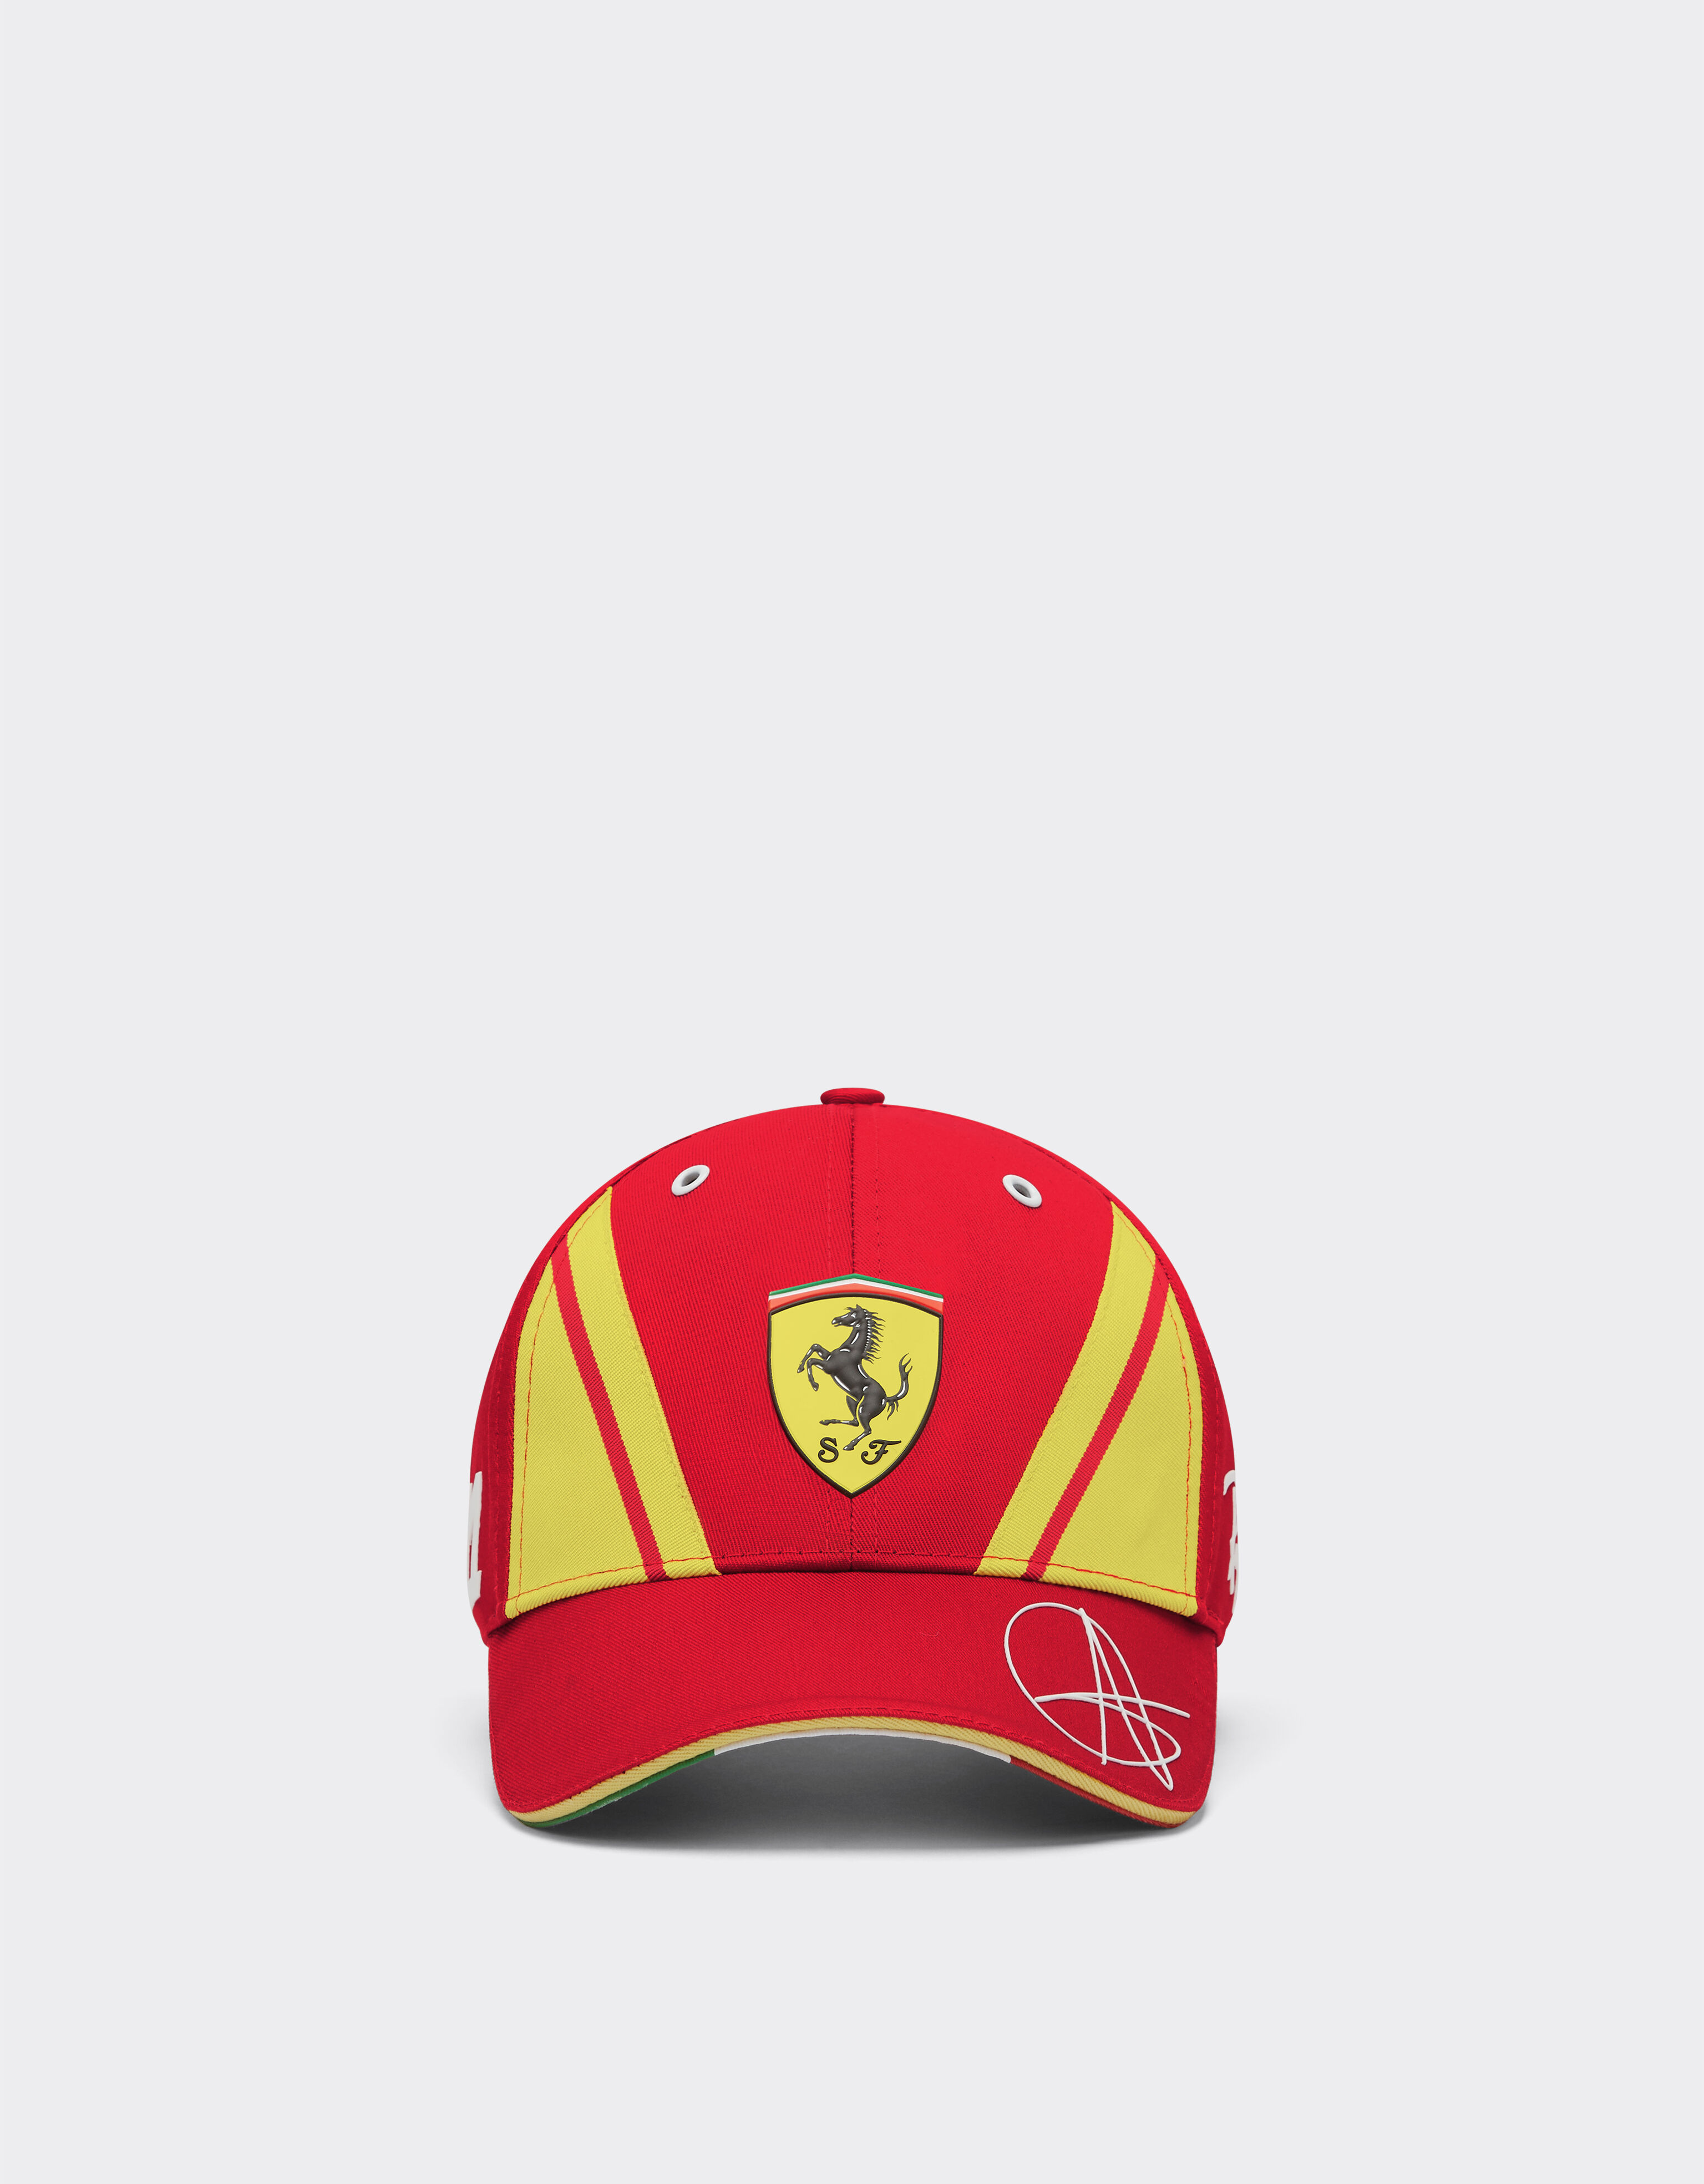 ${brand} Cappellino Giovinazzi Ferrari Hypercar - Edizione limitata ${colorDescription} ${masterID}